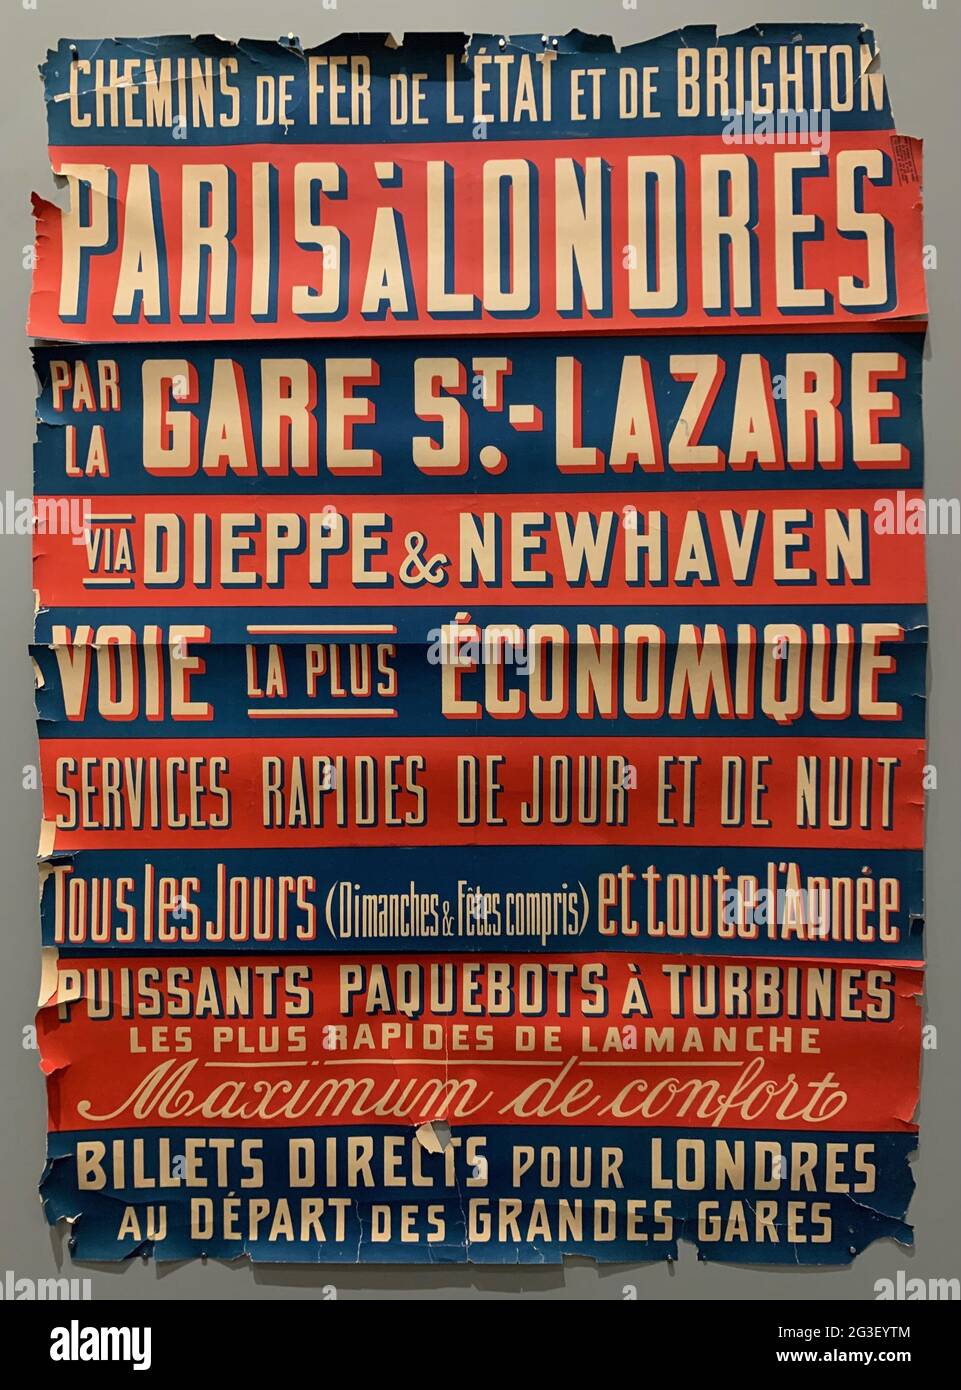 Cartellone vintage. Parigi. Gare St. Lazare, ecc. bordi di Thorn. Strisce blu e rosse. Bella tipografia. Foto Stock